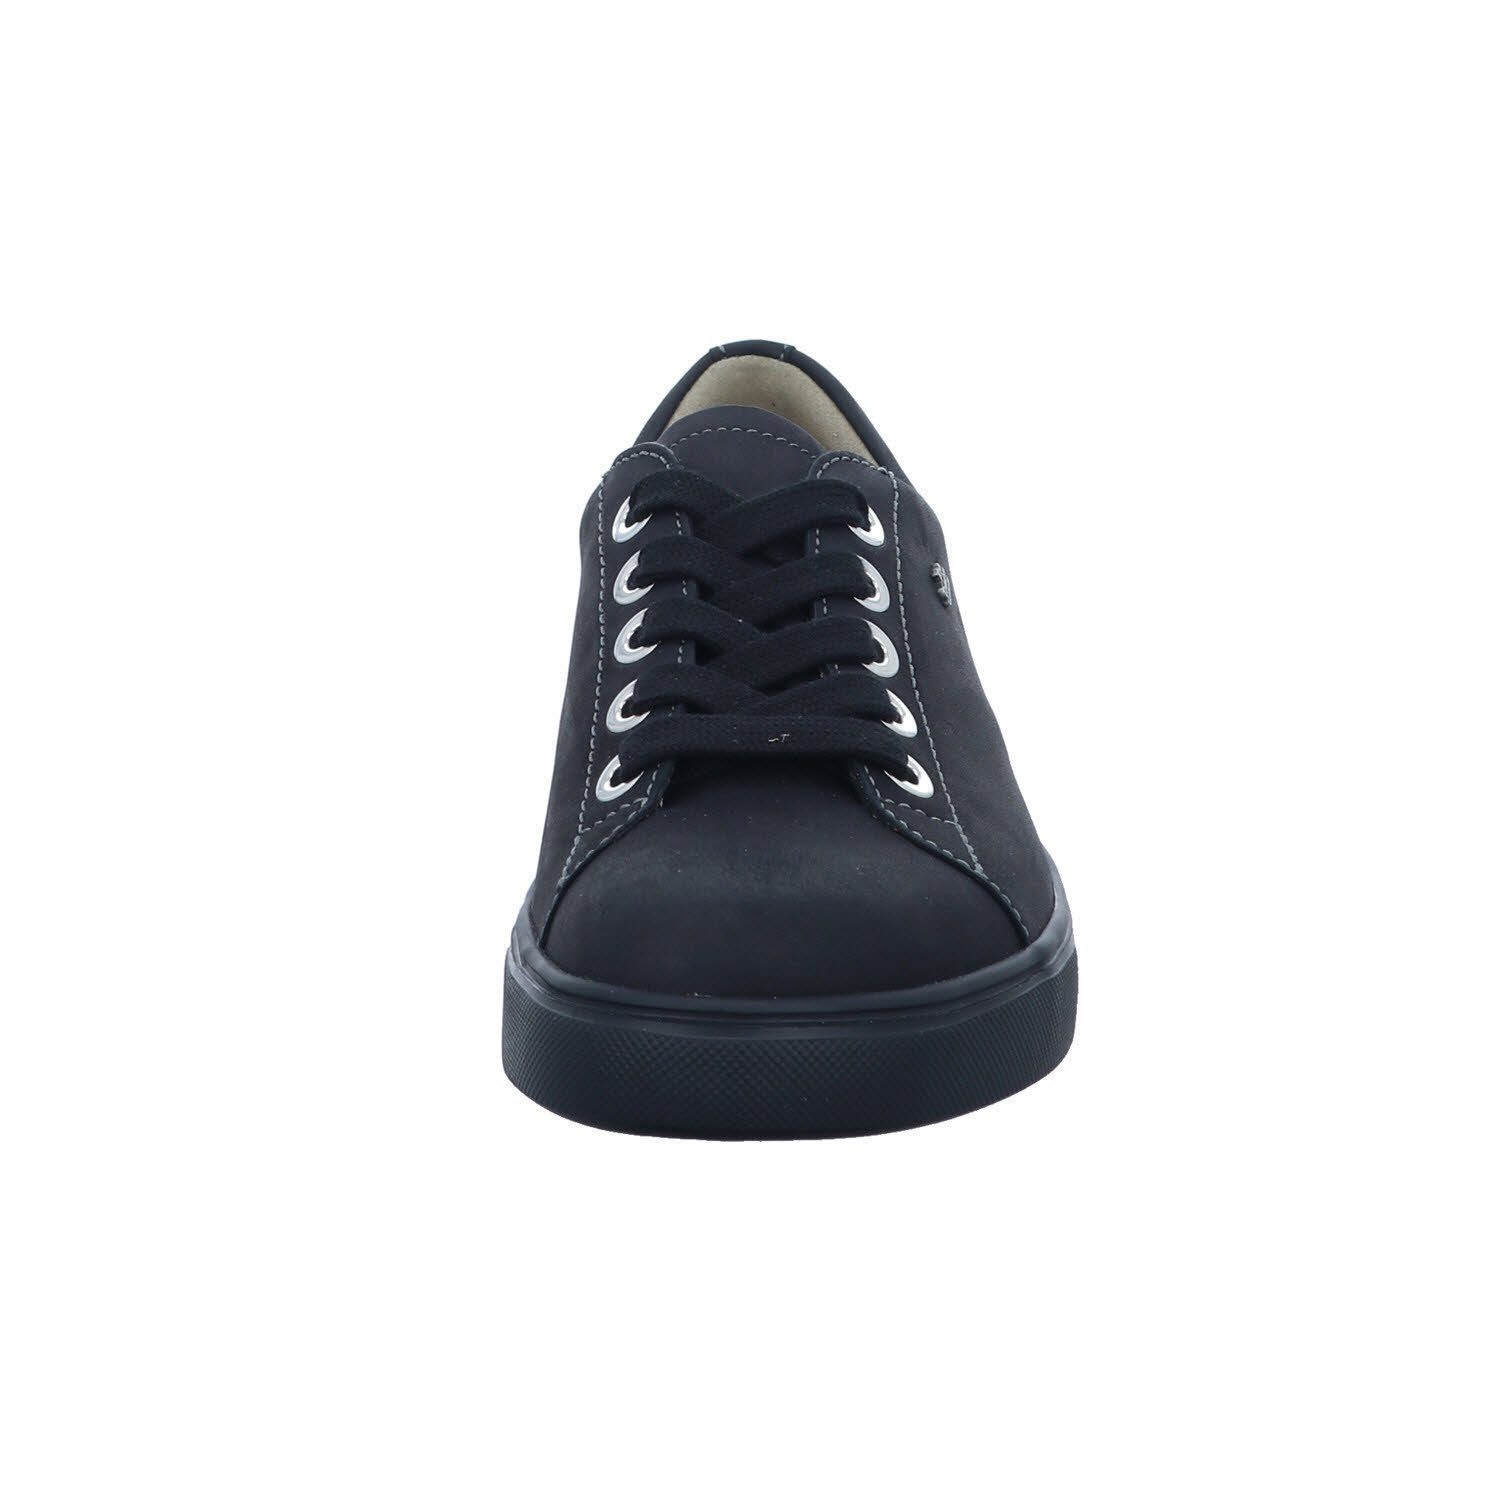 Sneaker Finn black Comfort